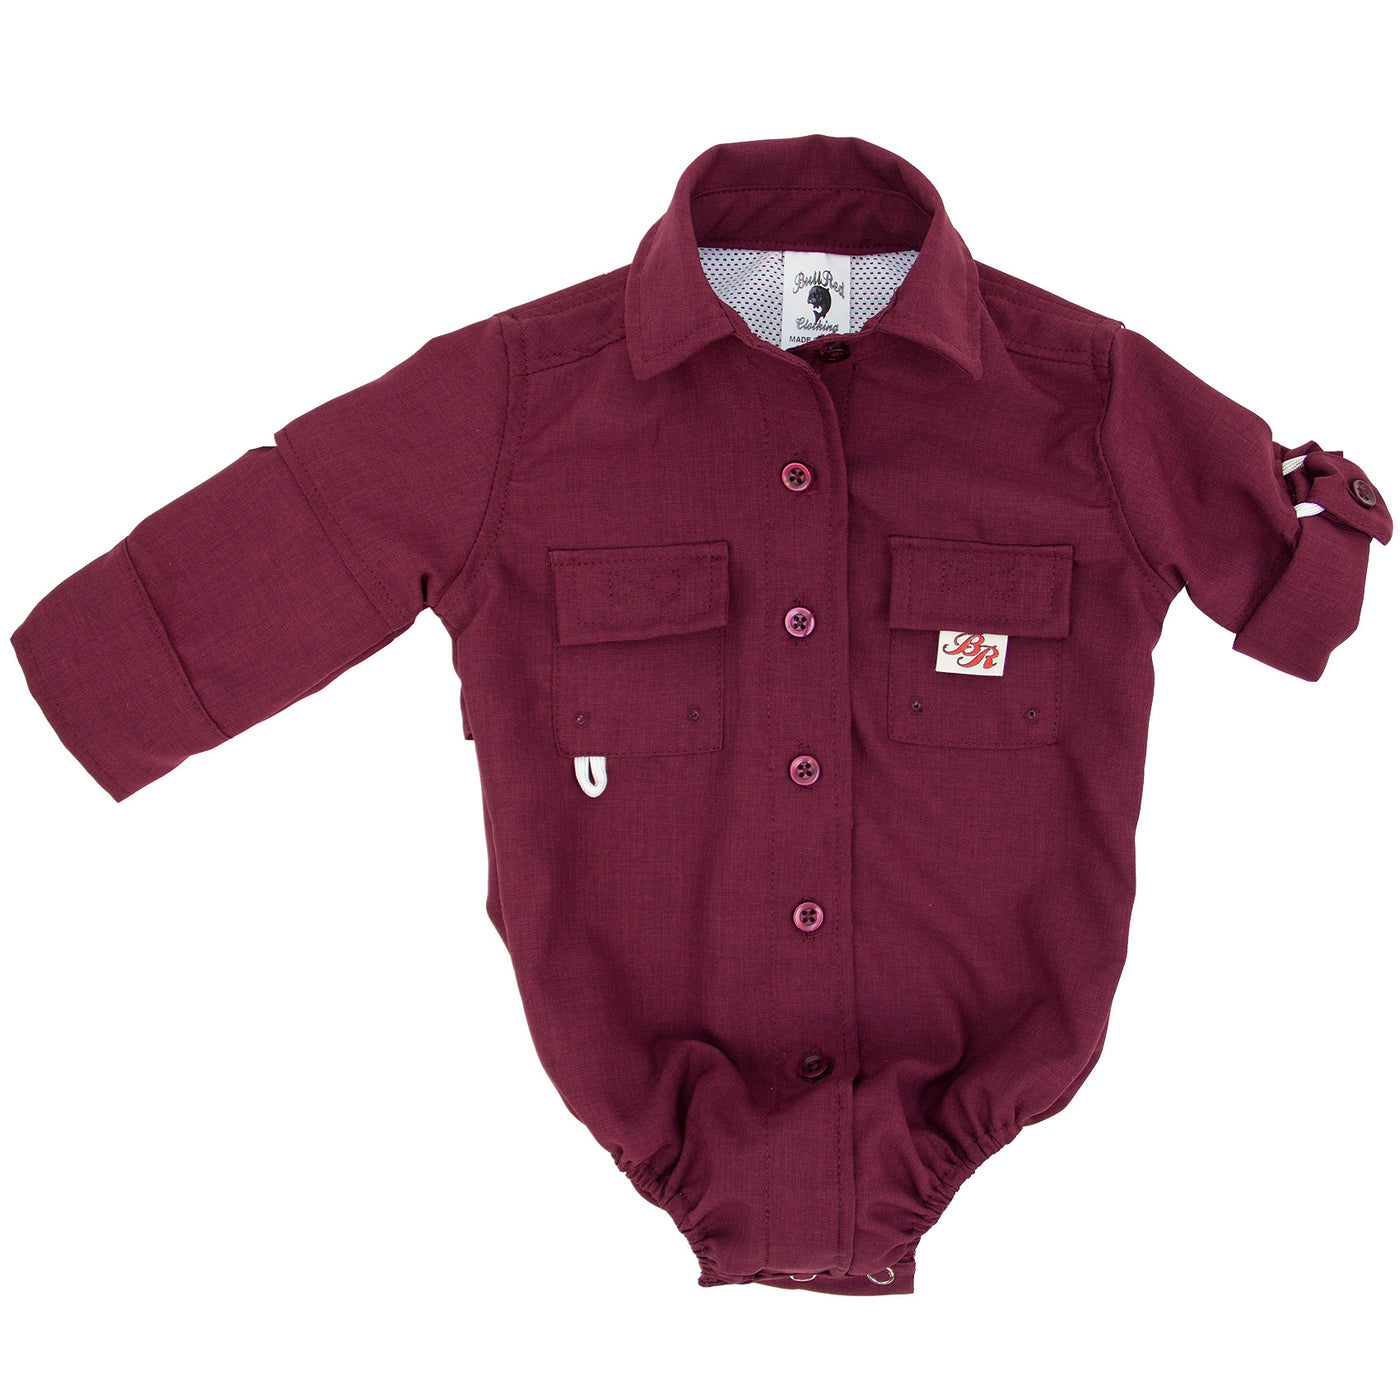 BullRed Clothing The Original Infant Fishing Shirt, Infant Unisex, Size: 9 Months, White